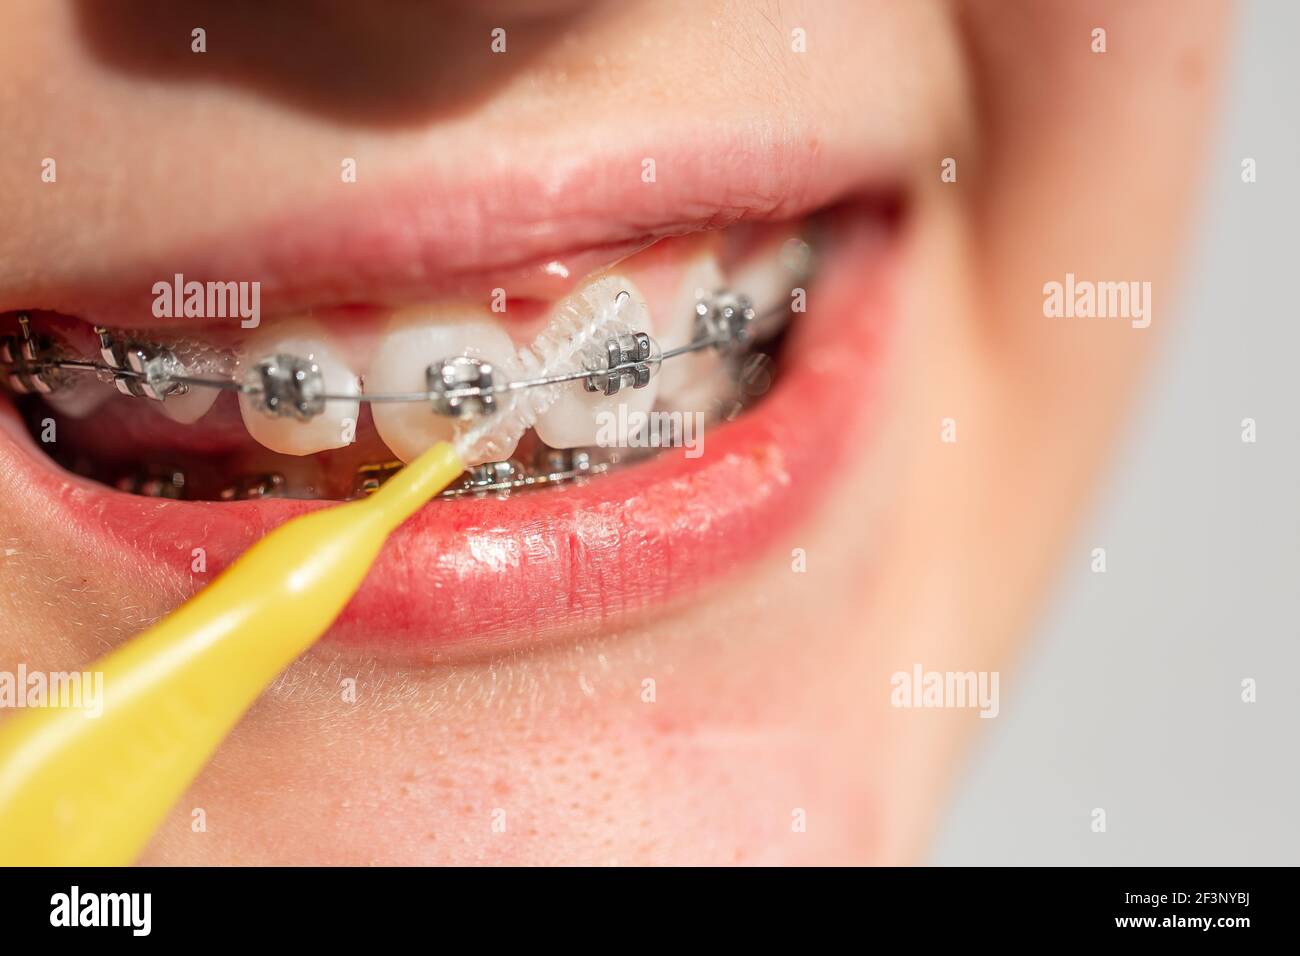 Gros plan d'une adolescente souriant entre crochets orthodontiques. Fille avec bretelles sur les dents. Traitement orthodontique. Banque D'Images